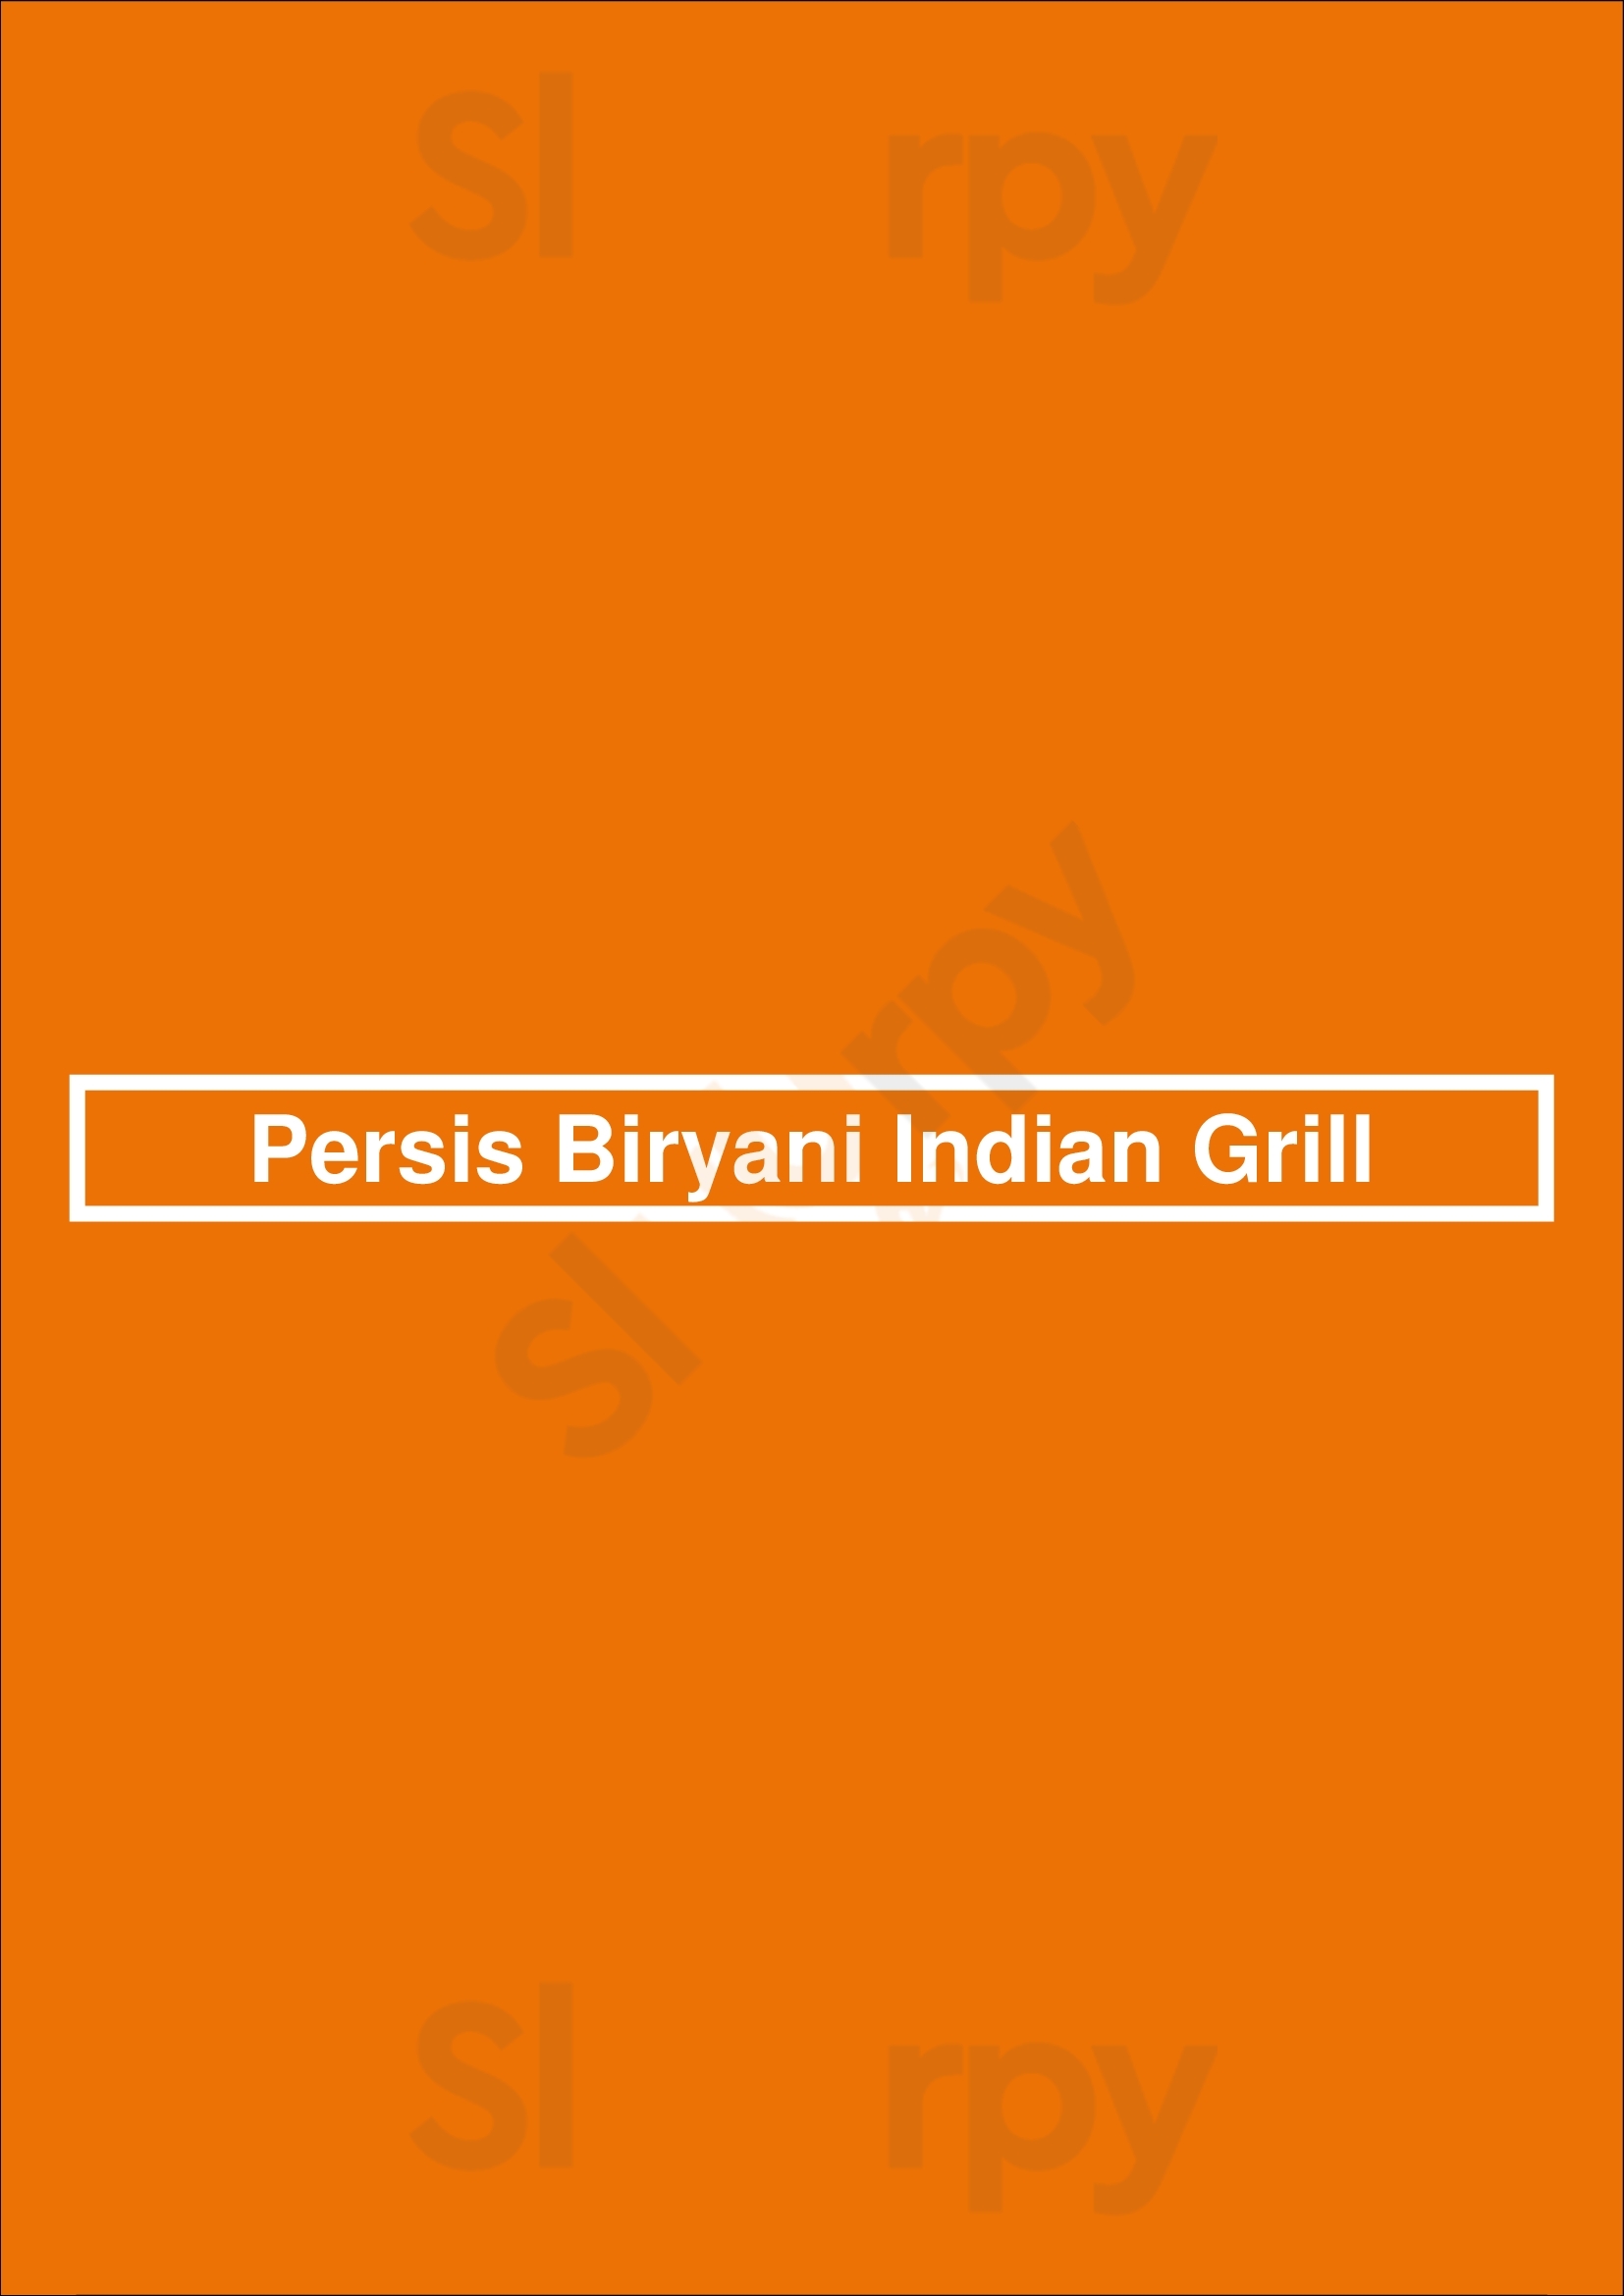 Persis Biryani Indian Grill Mount Juliet Menu - 1